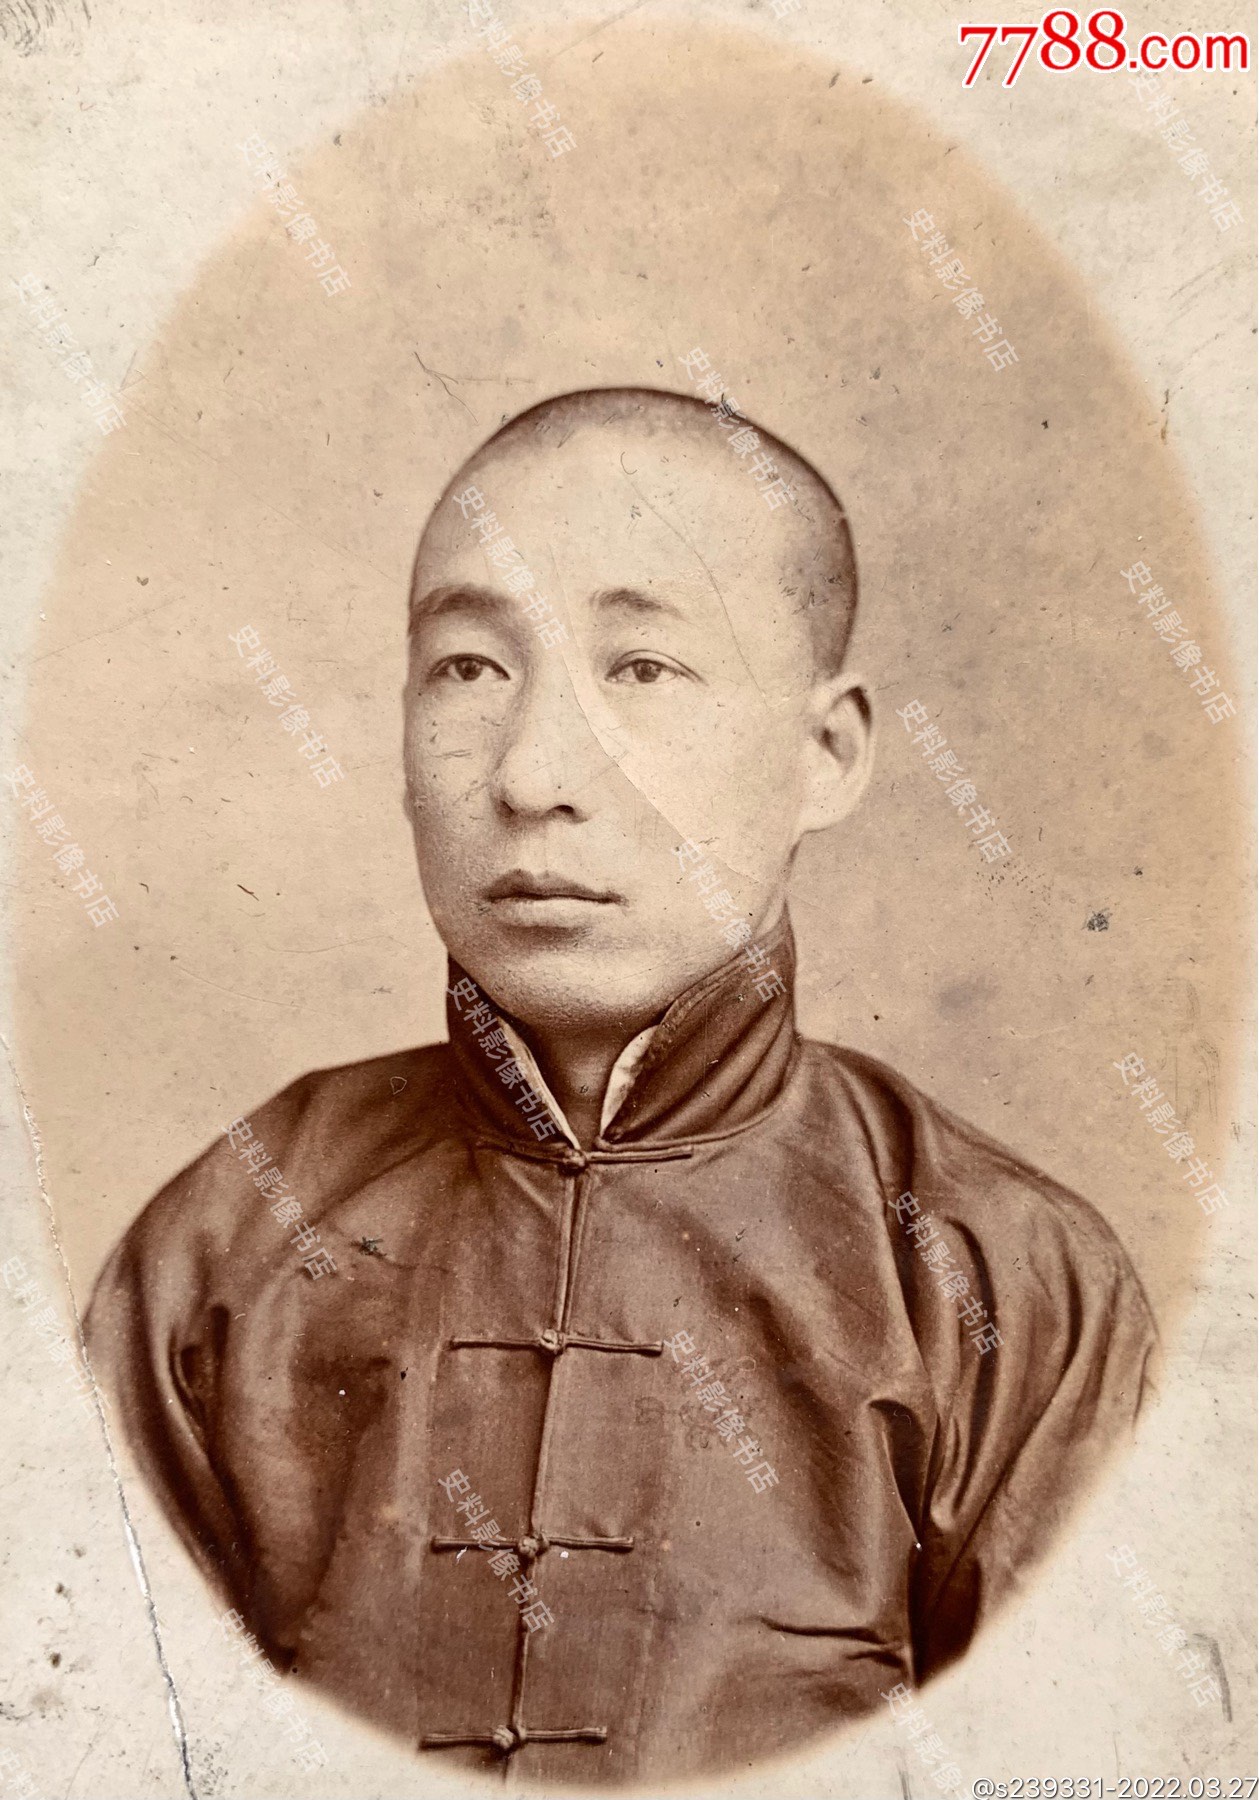 民国早期身穿传统马褂的短发男青年肖像照一枚